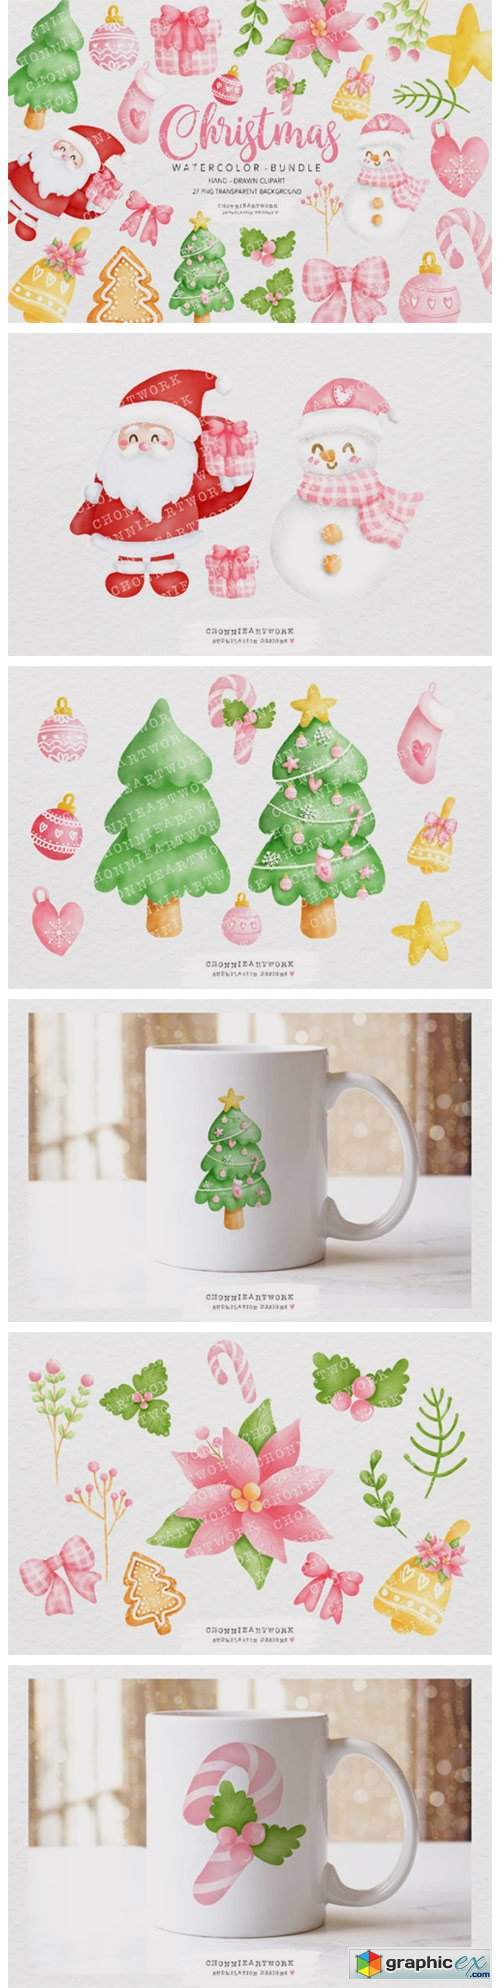 Watercolor Christmas Clipart Bundle